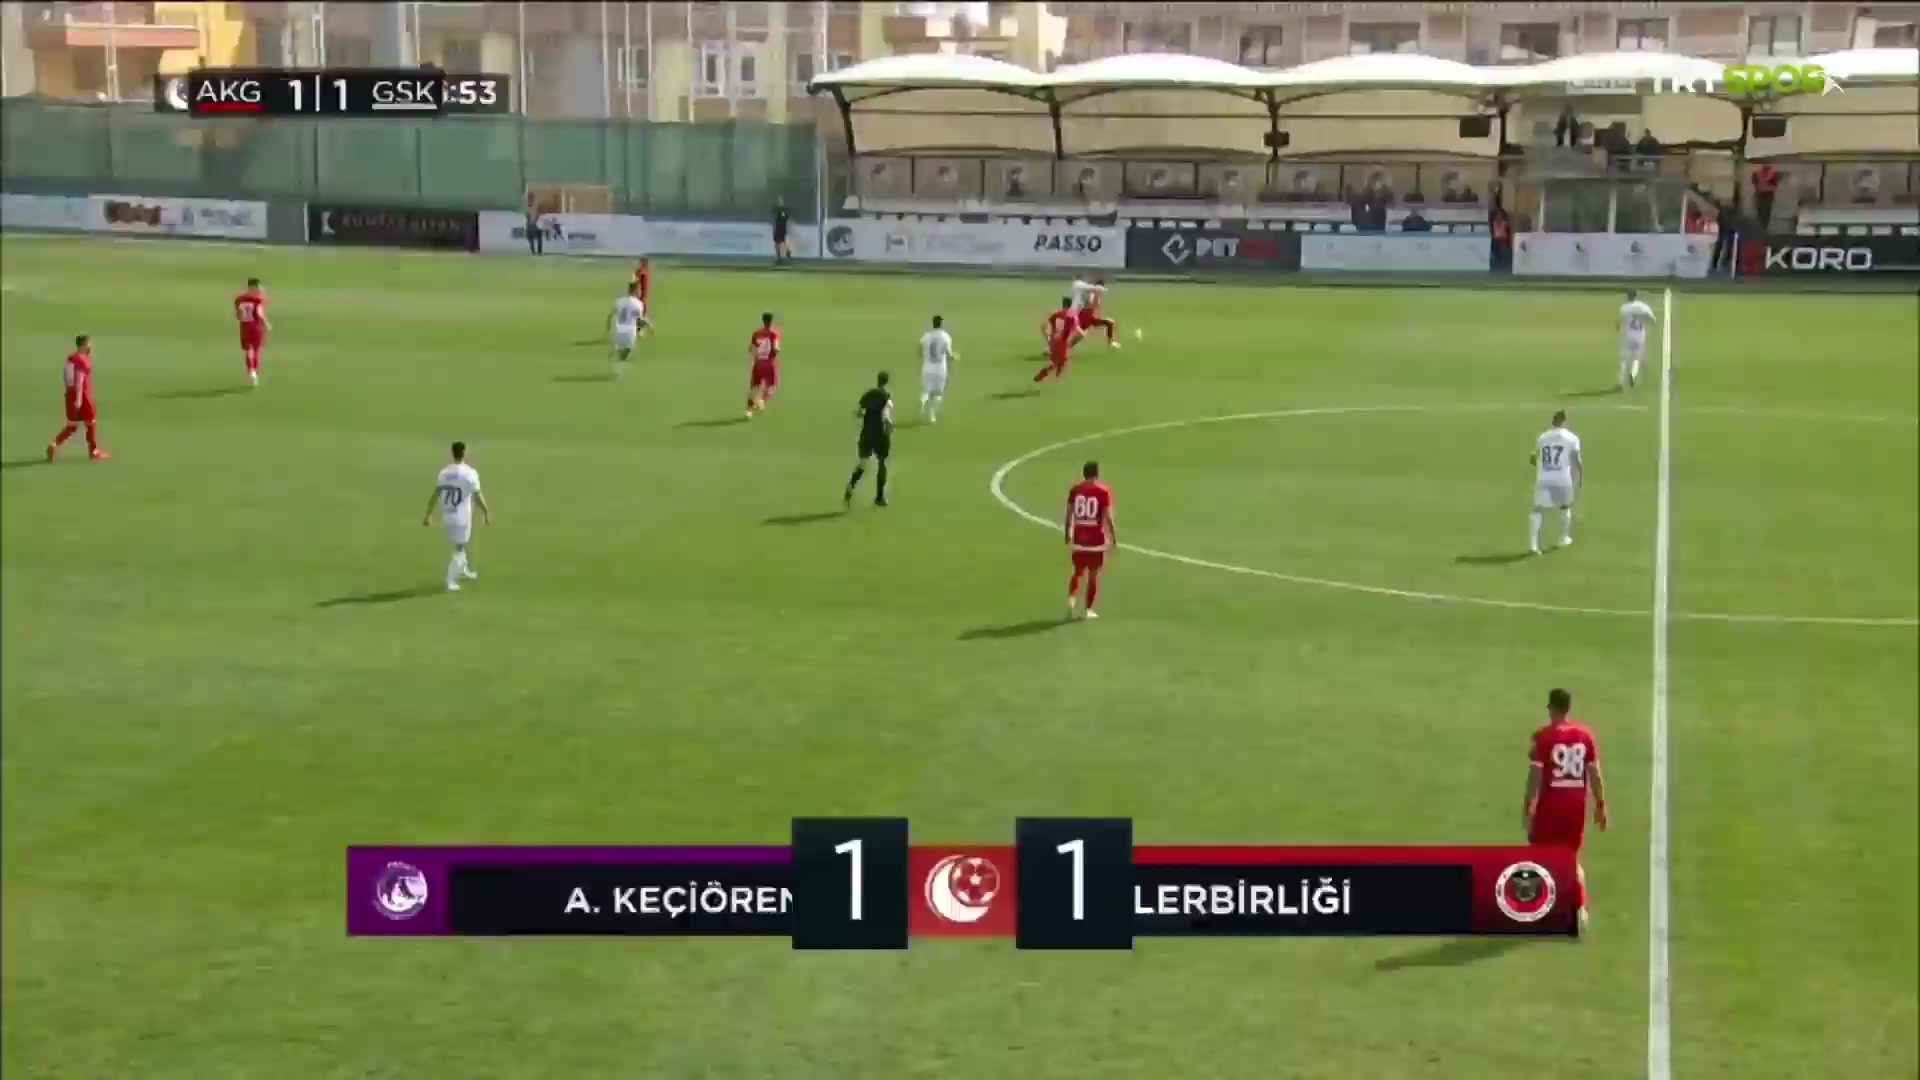 TUR D2 Keciorengucu Vs Genclerbirligi  Goal in 56 min, Score 2:1